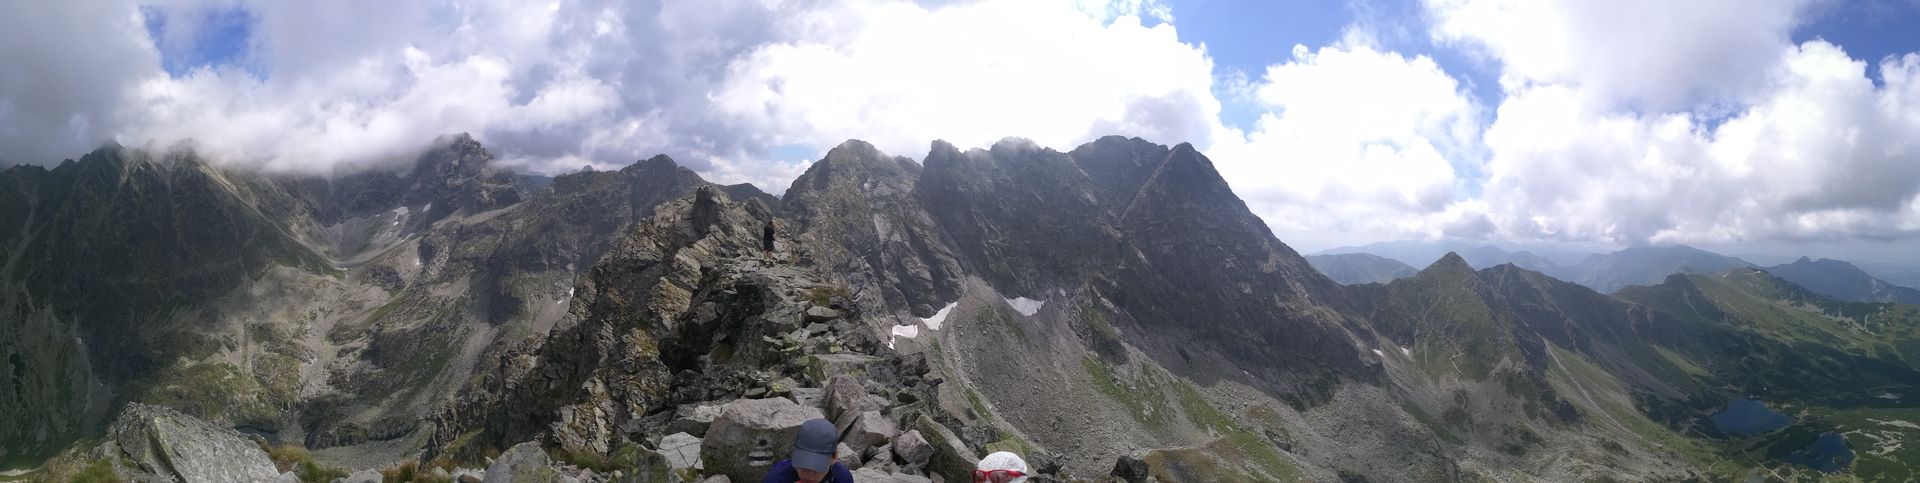 On Koscielec peak